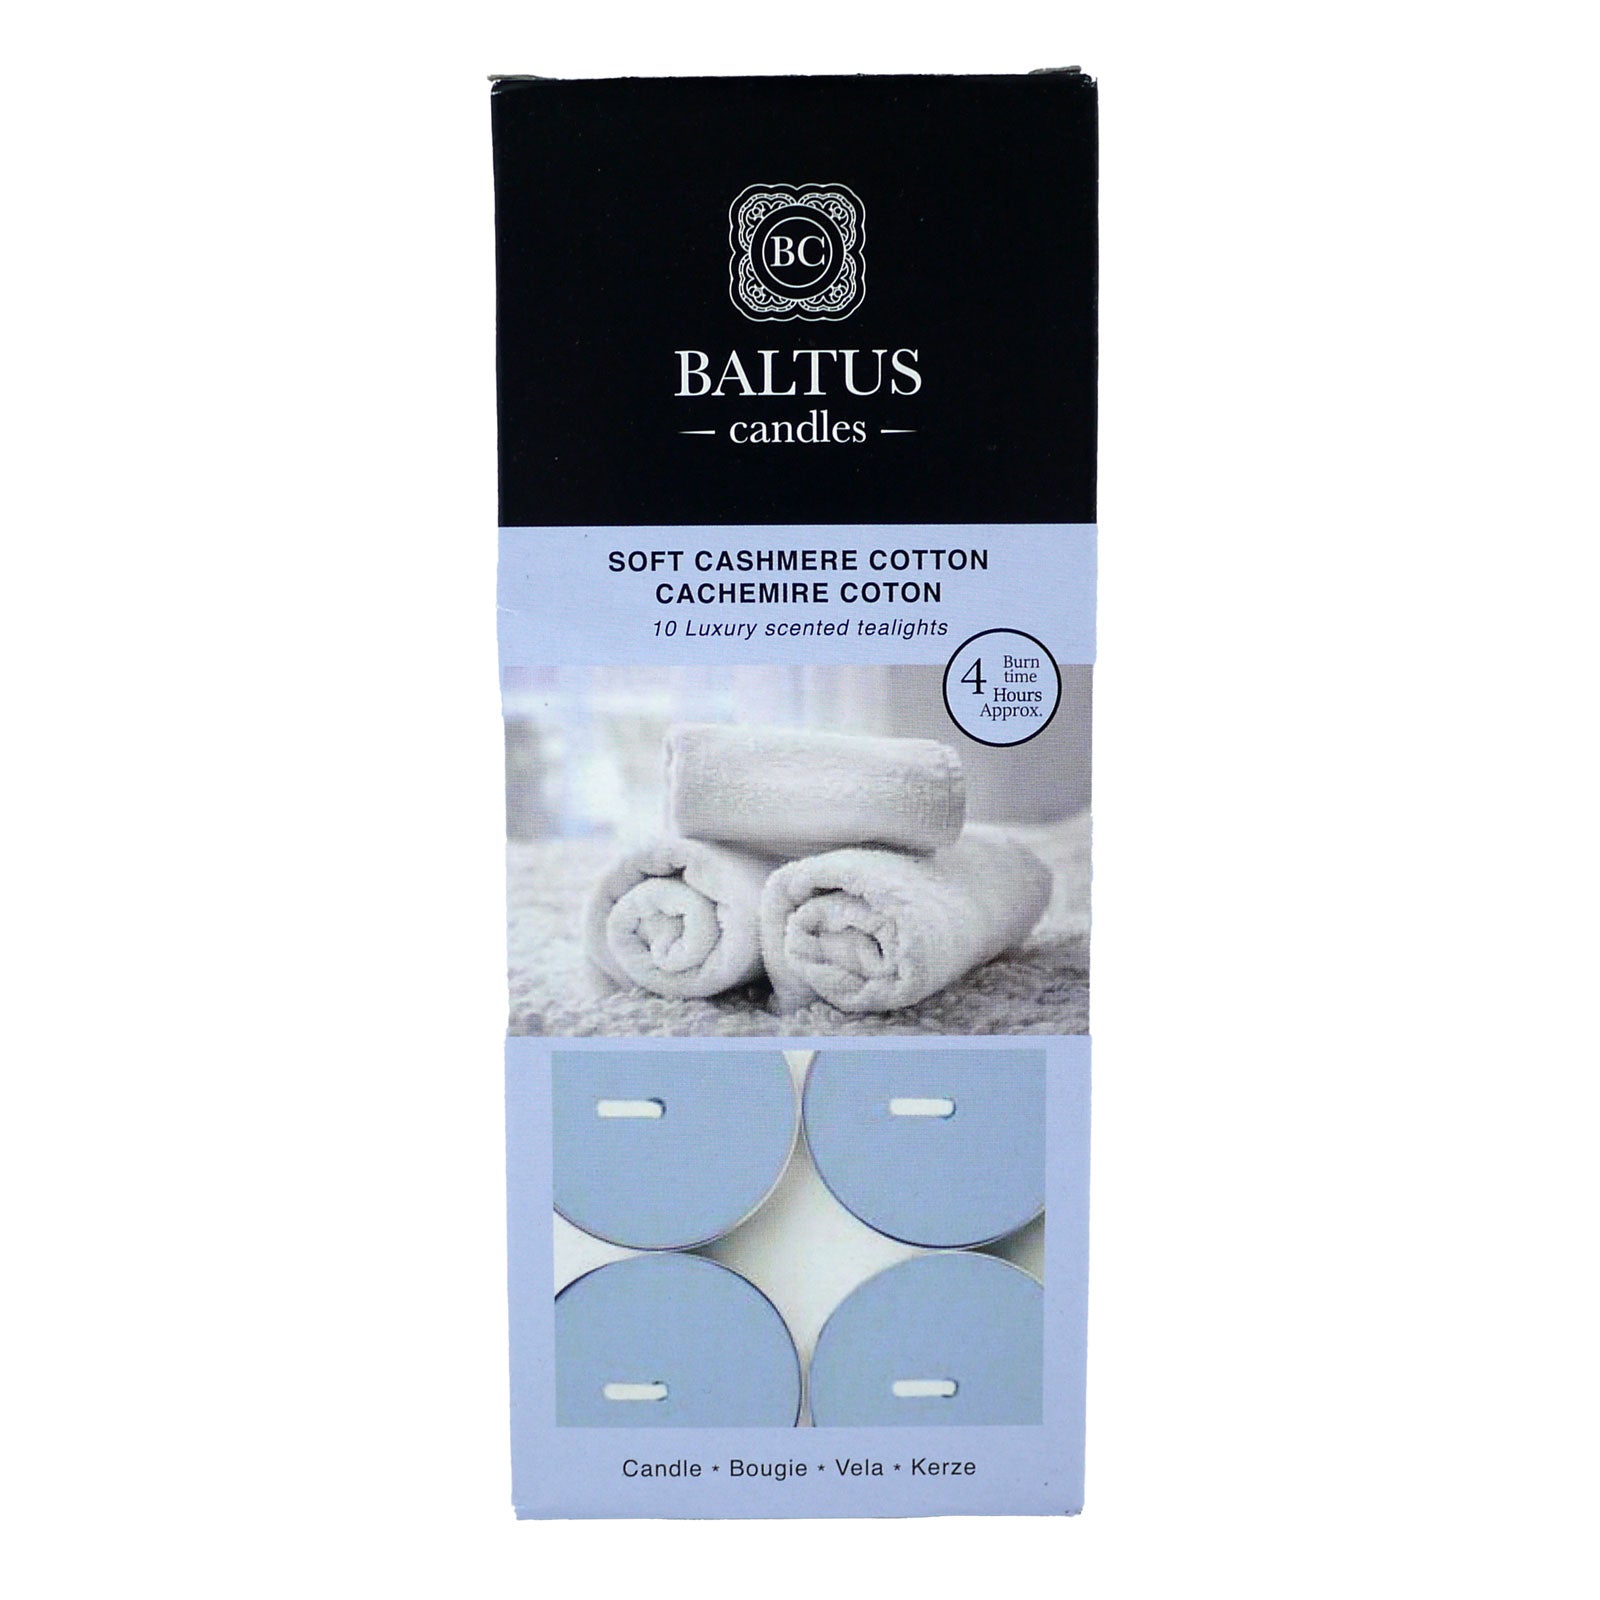 Baltus Cnadles Soft Cashmere cotton 10 tealights